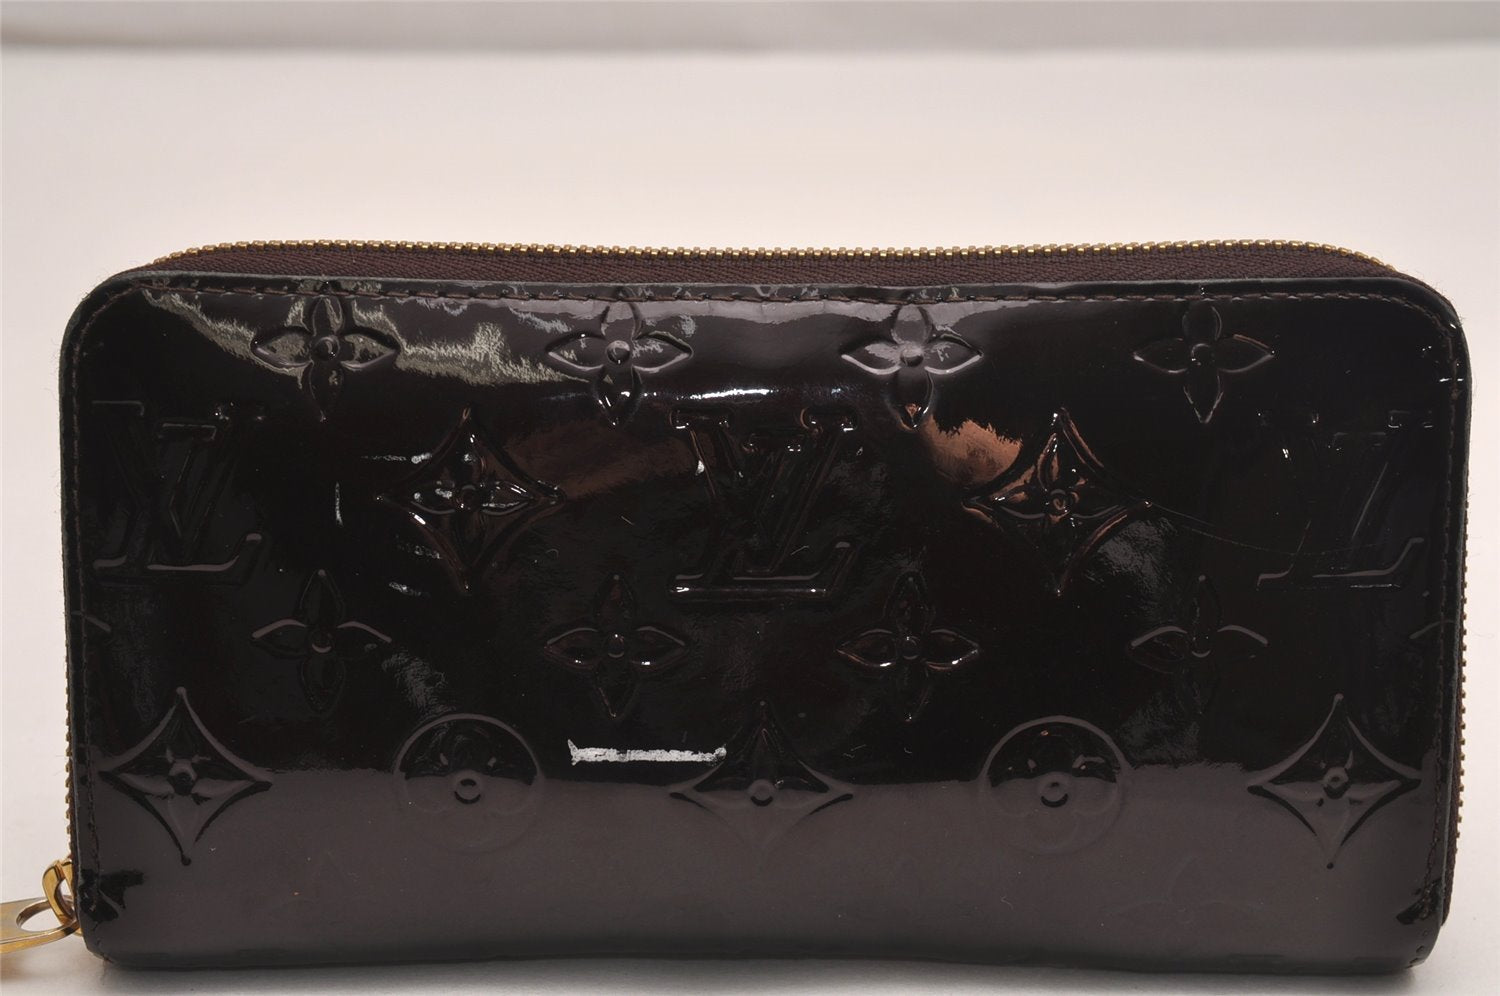 Authentic Louis Vuitton Vernis Zippy Wallet Long Purse Wine Red M93522 LV 4078J